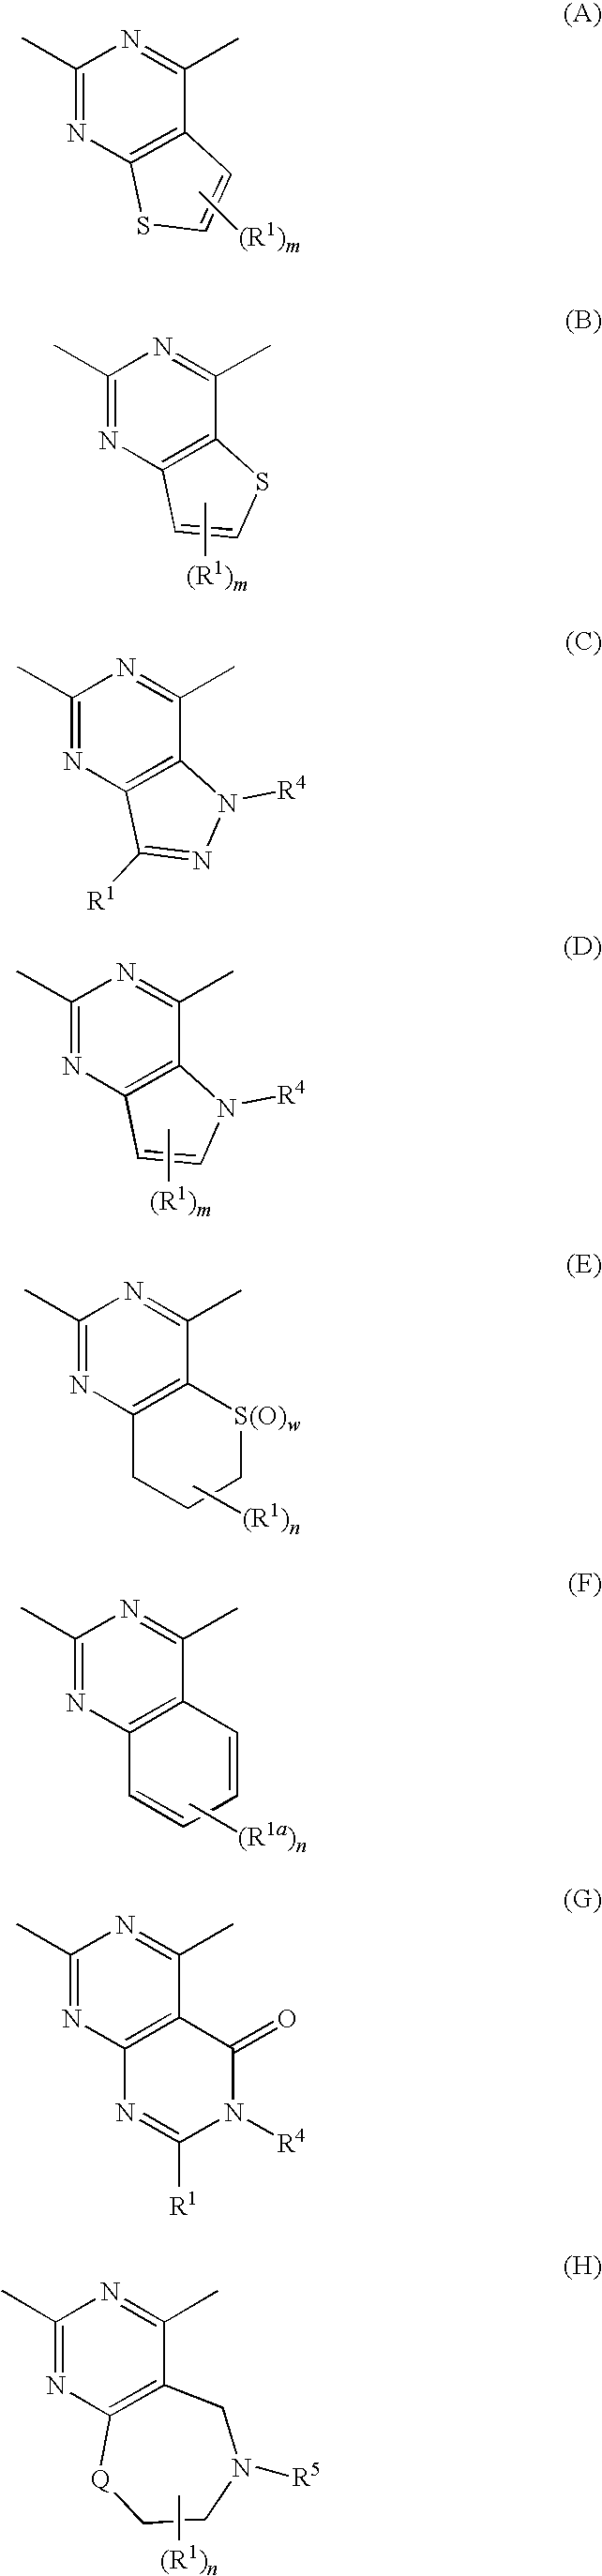 Alicyclic Heterocyclic Compound